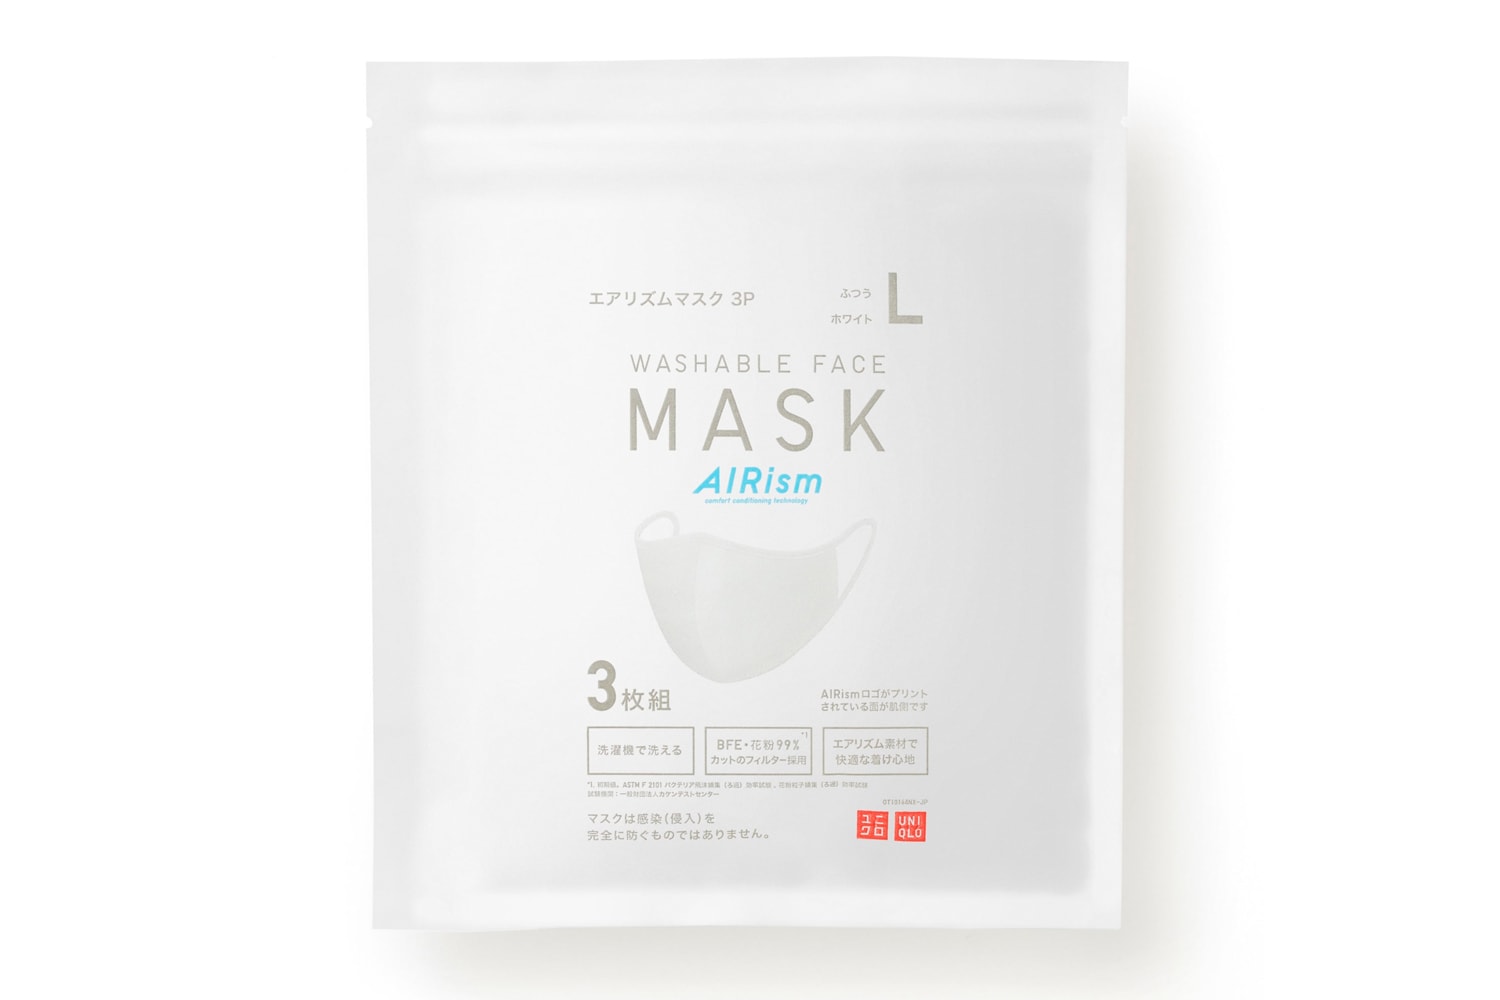 UNIQLO AIRism Mask Release Info Buy Price White coronavirus COVID-19